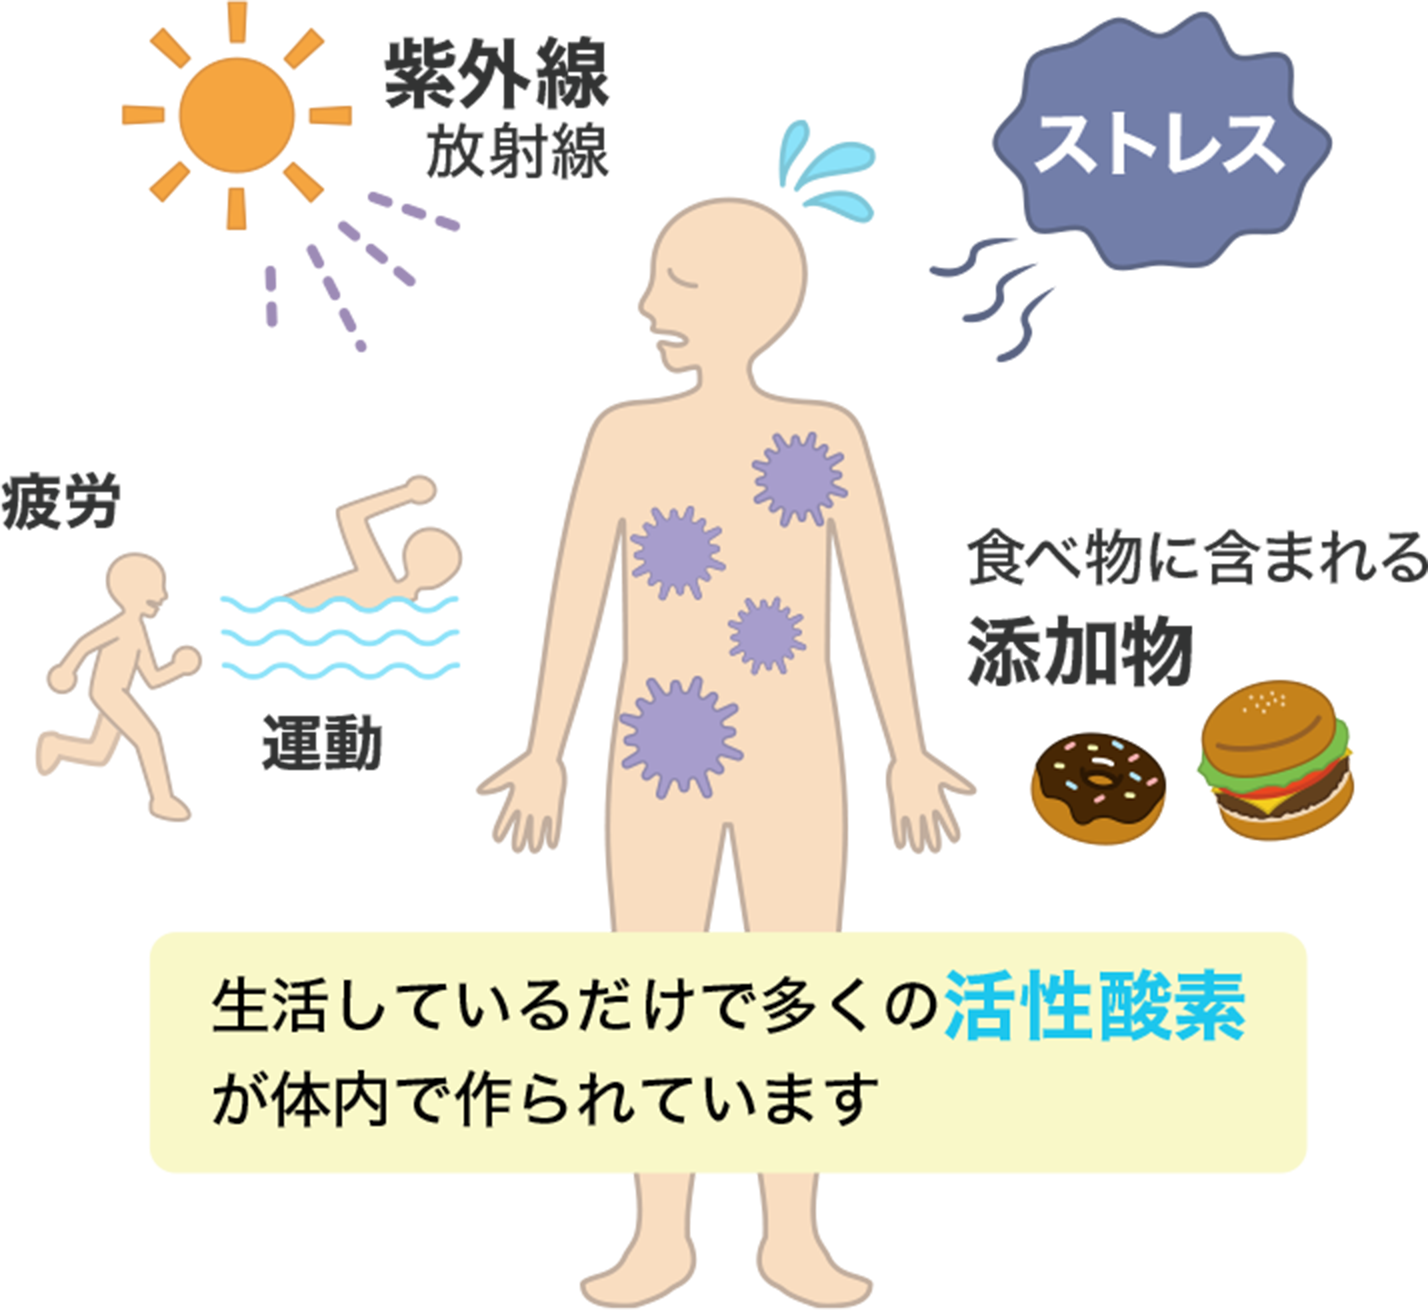 「紫外線、放射線／ストレス／疲労、運動／食べ物に含まれる添加物」生活しているだけで多くの活性酸素が体内で作られています